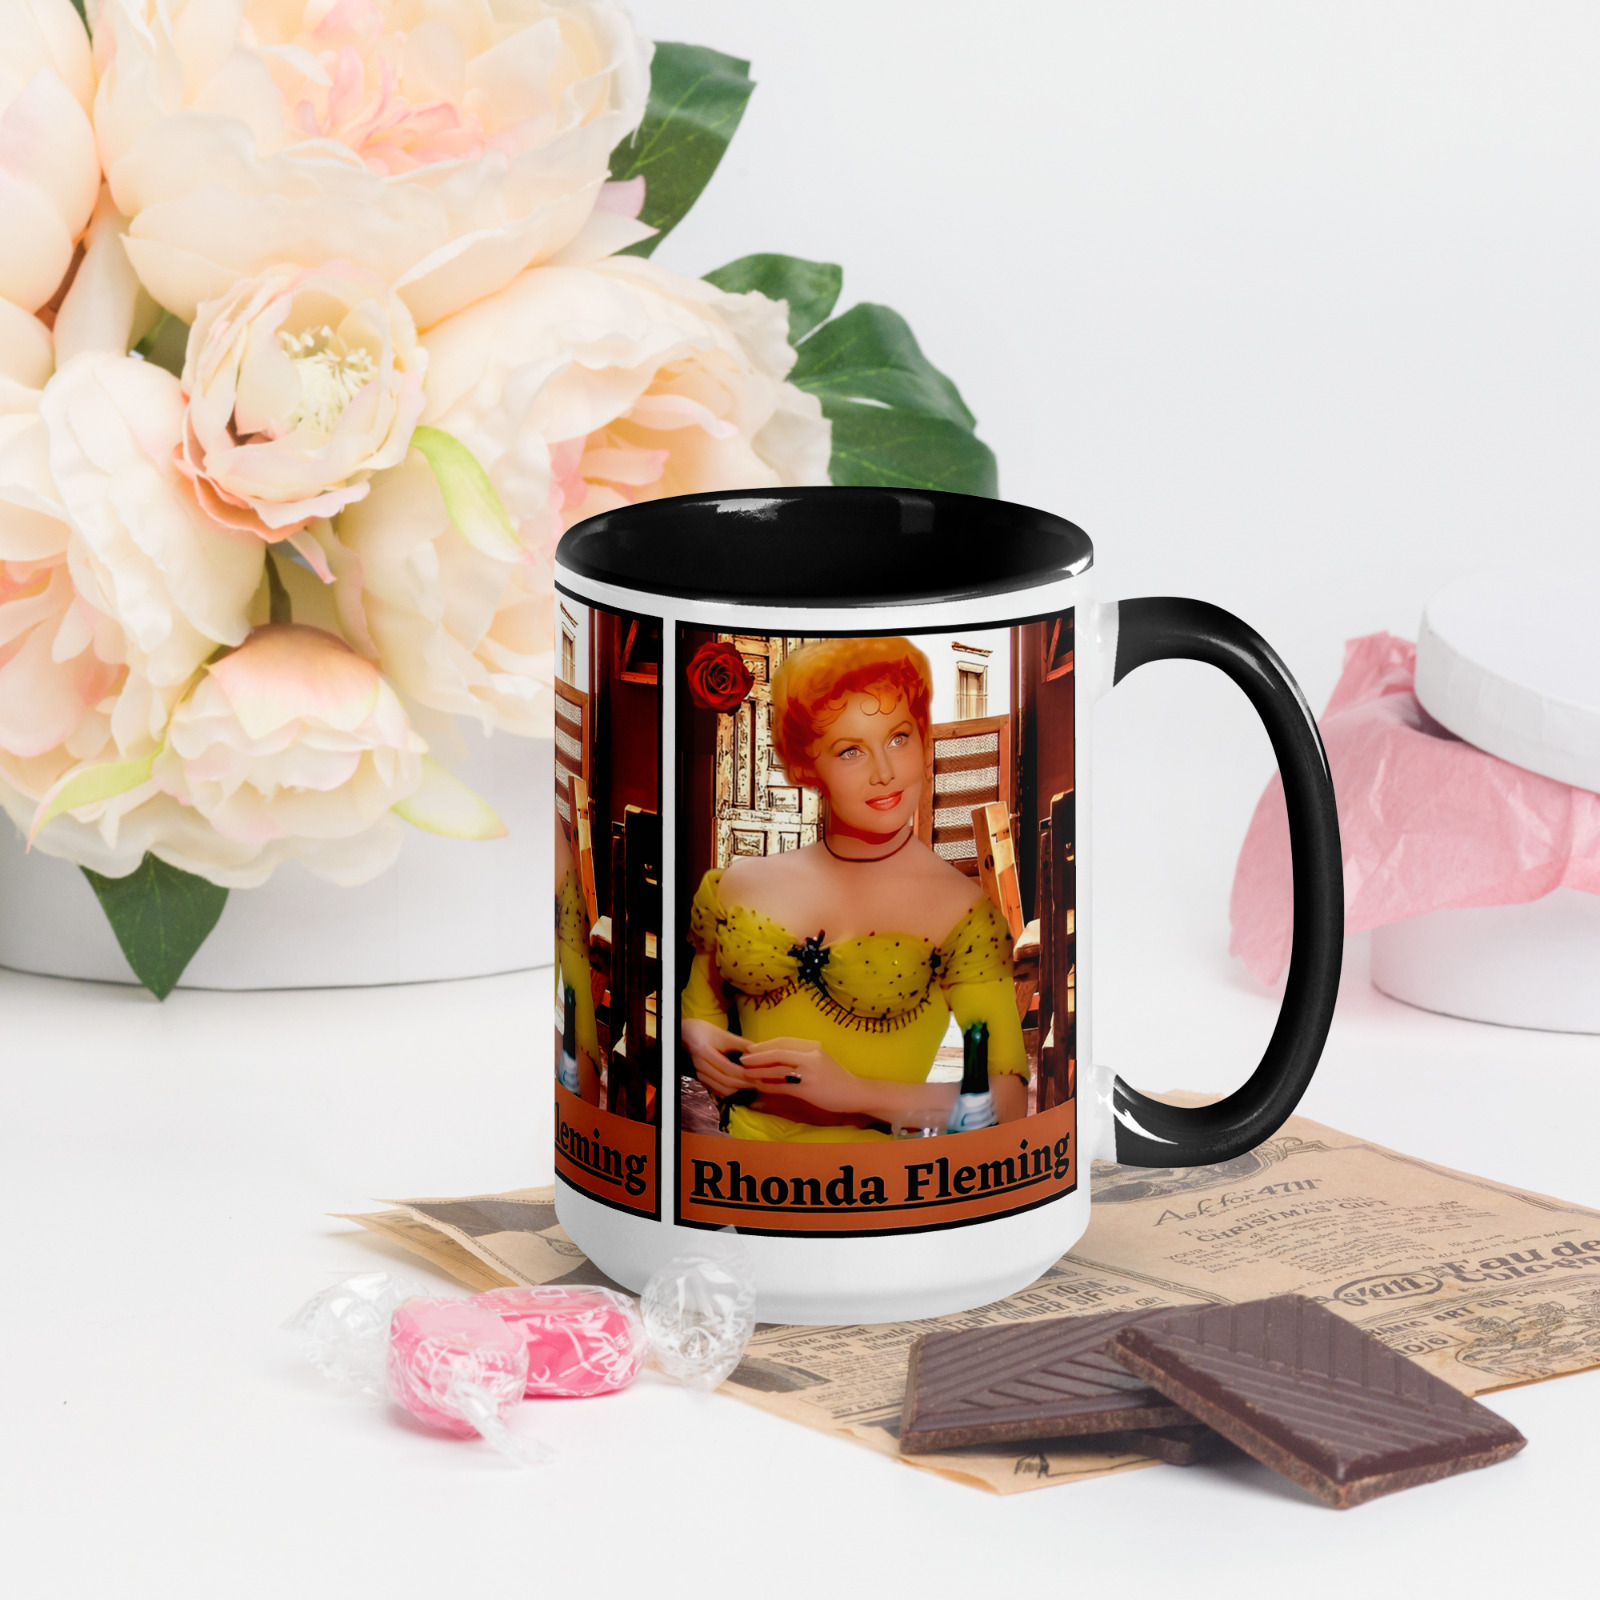 New Premium Coffee Mug 15oz Rhonda Fleming 